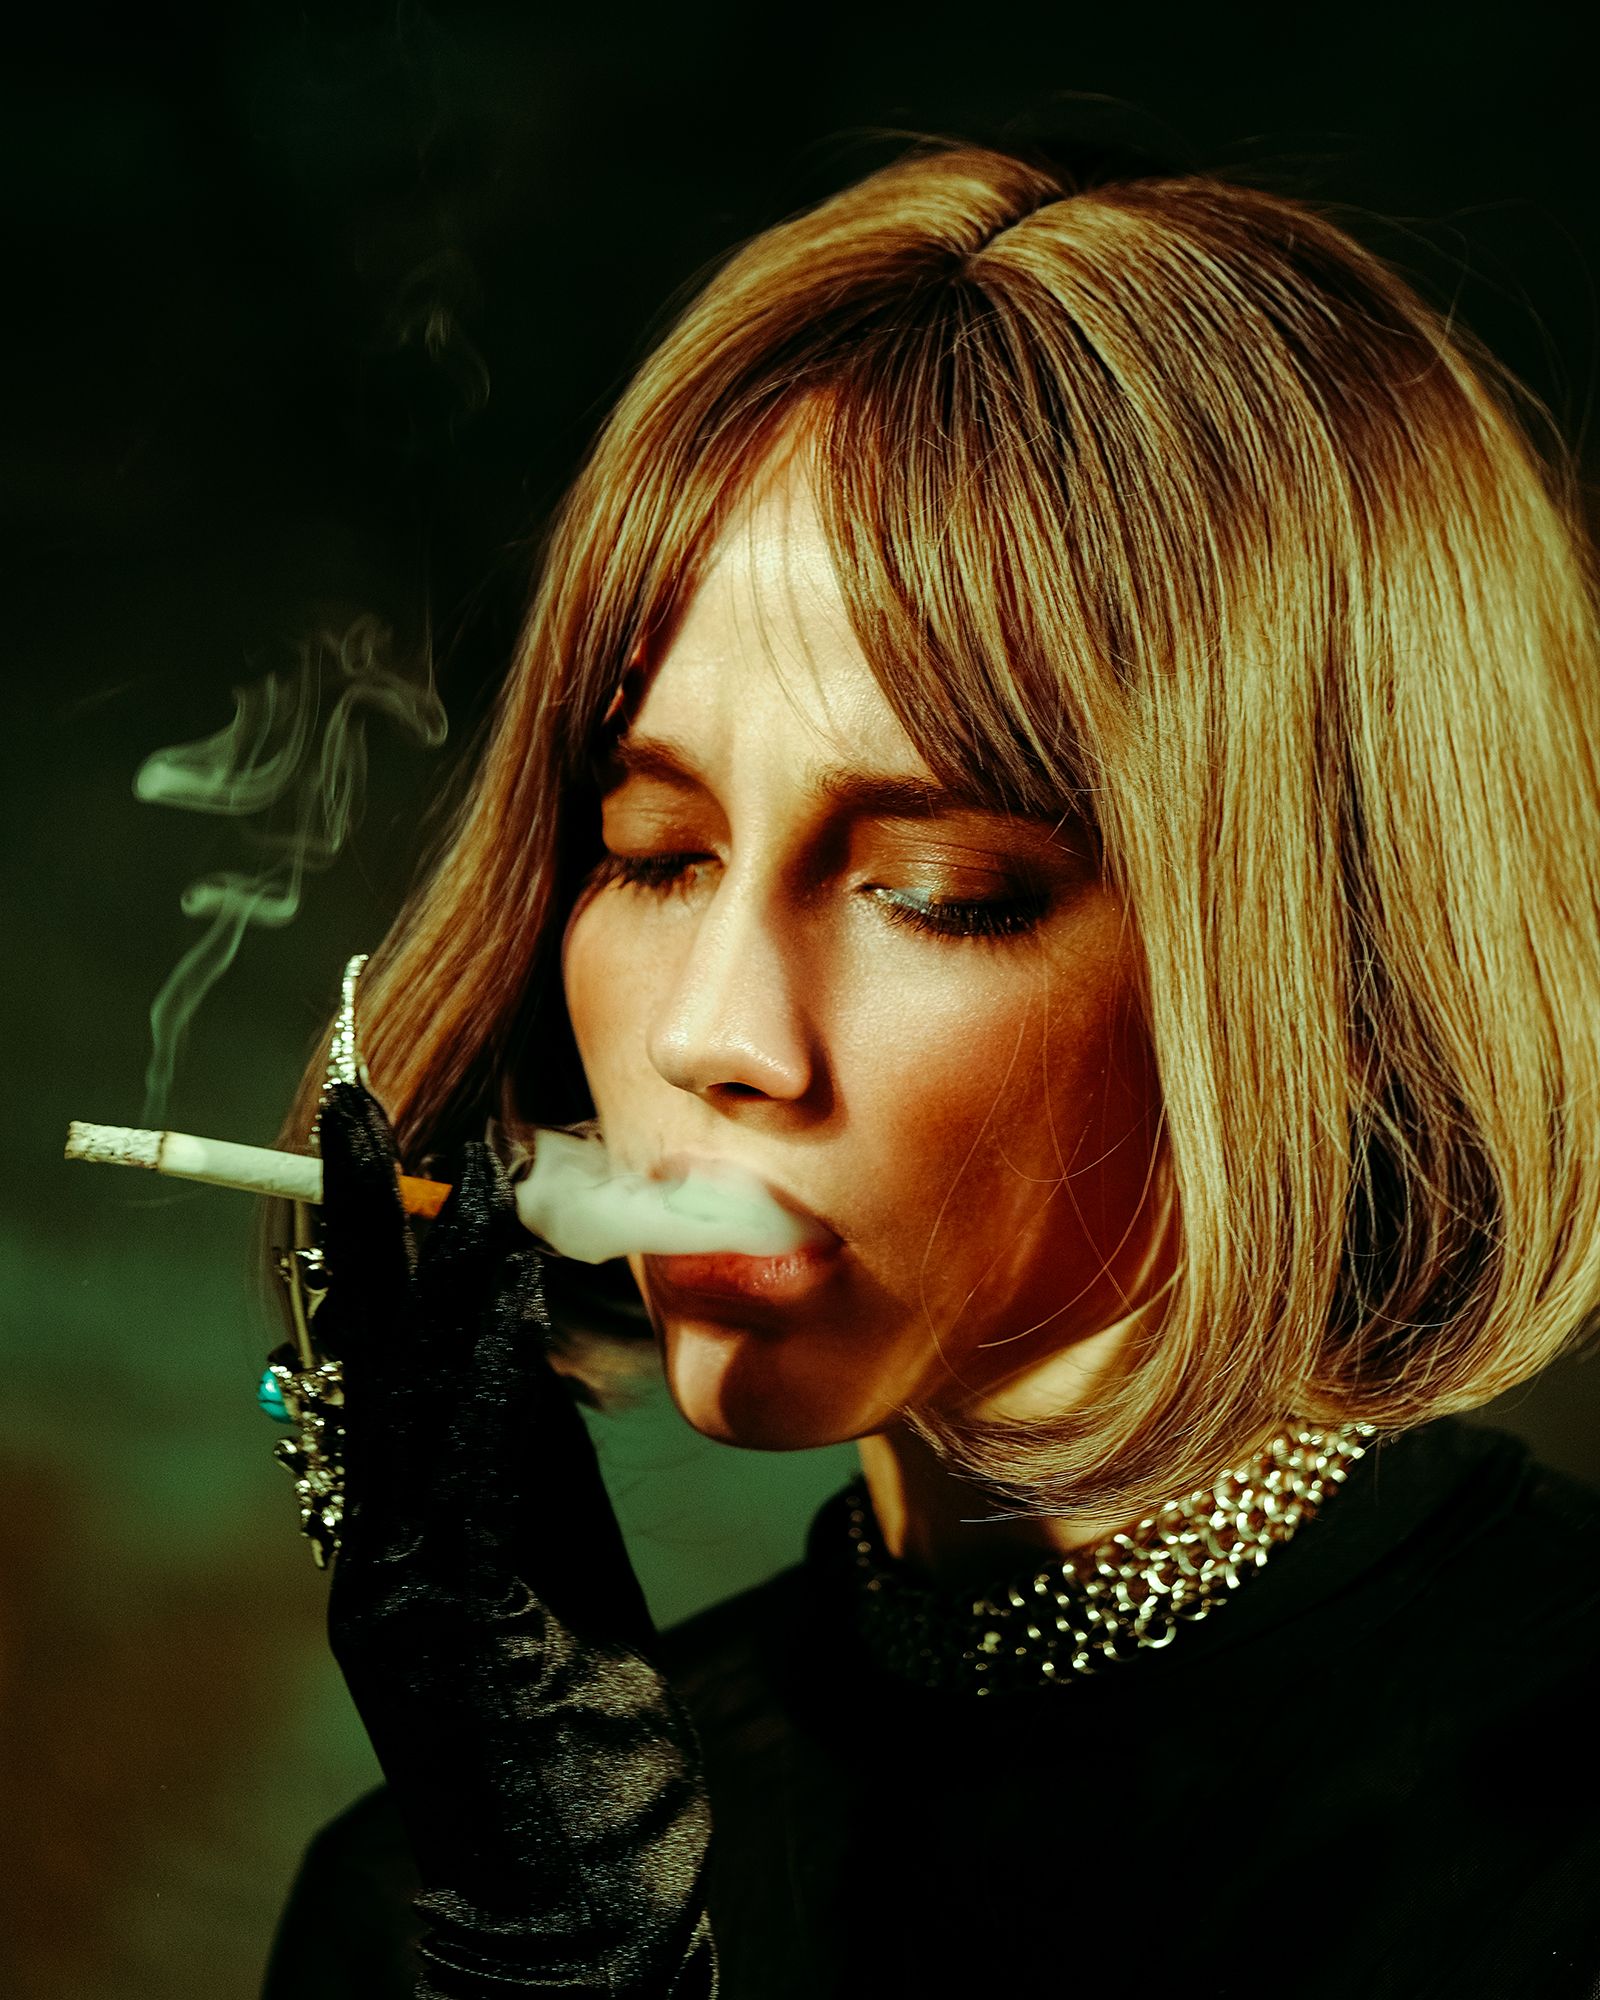 сигарета, курение, портрет, женский портрет, санкт петербург фотограф, фотосессия, Aleksandr Shvedov